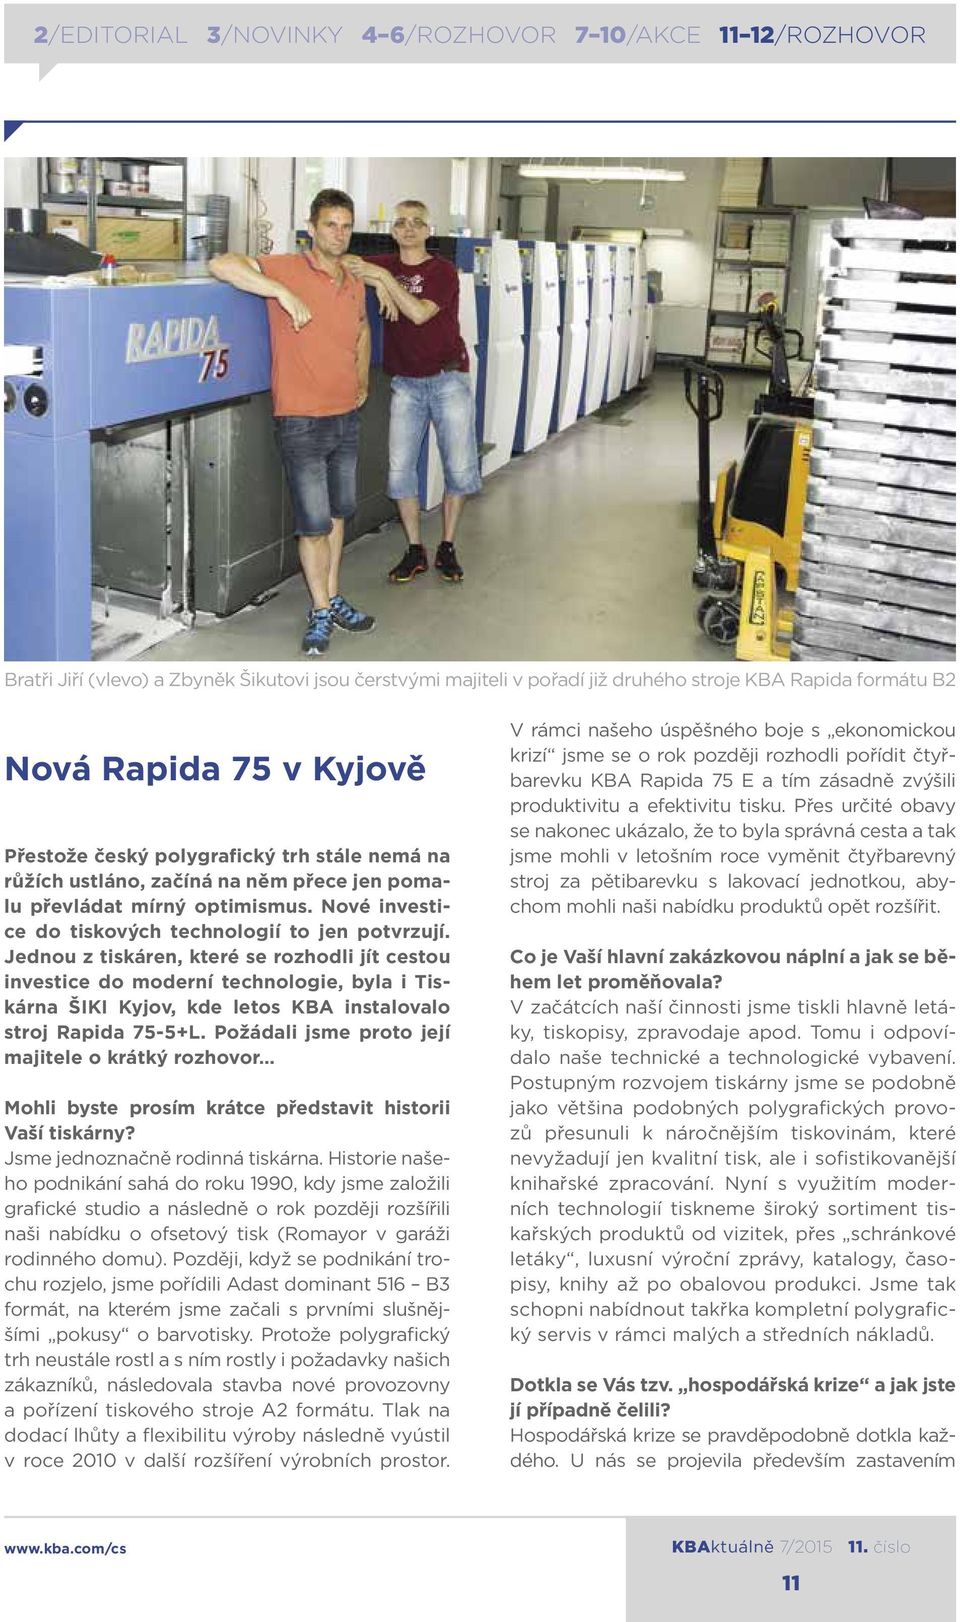 Jednou z tiskáren, které se rozhodli jít cestou investice do moderní technologie, byla i Tiskárna ŠIKI Kyjov, kde letos KBA instalovalo stroj Rapida 75-5+L.